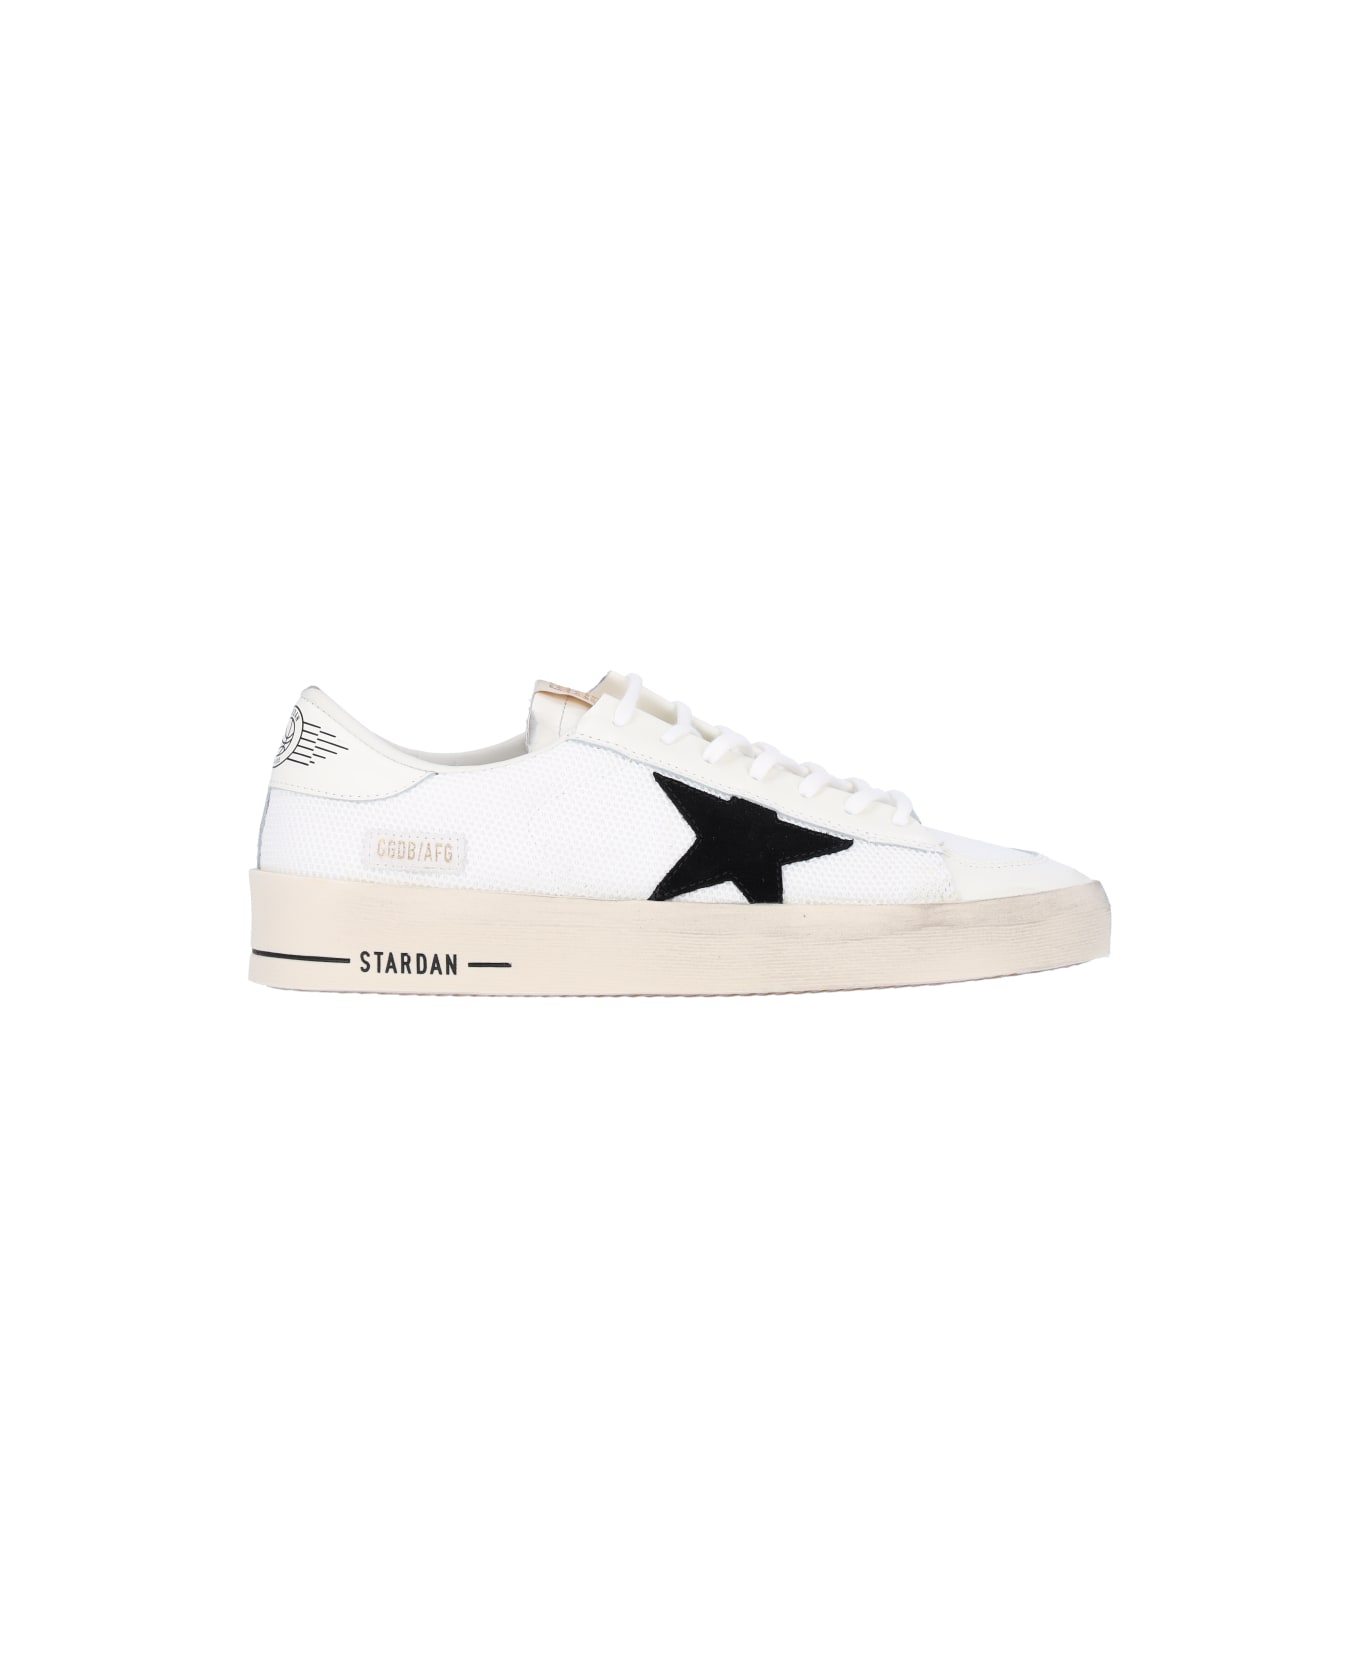 Golden Goose 'stardan' Sneakers - White